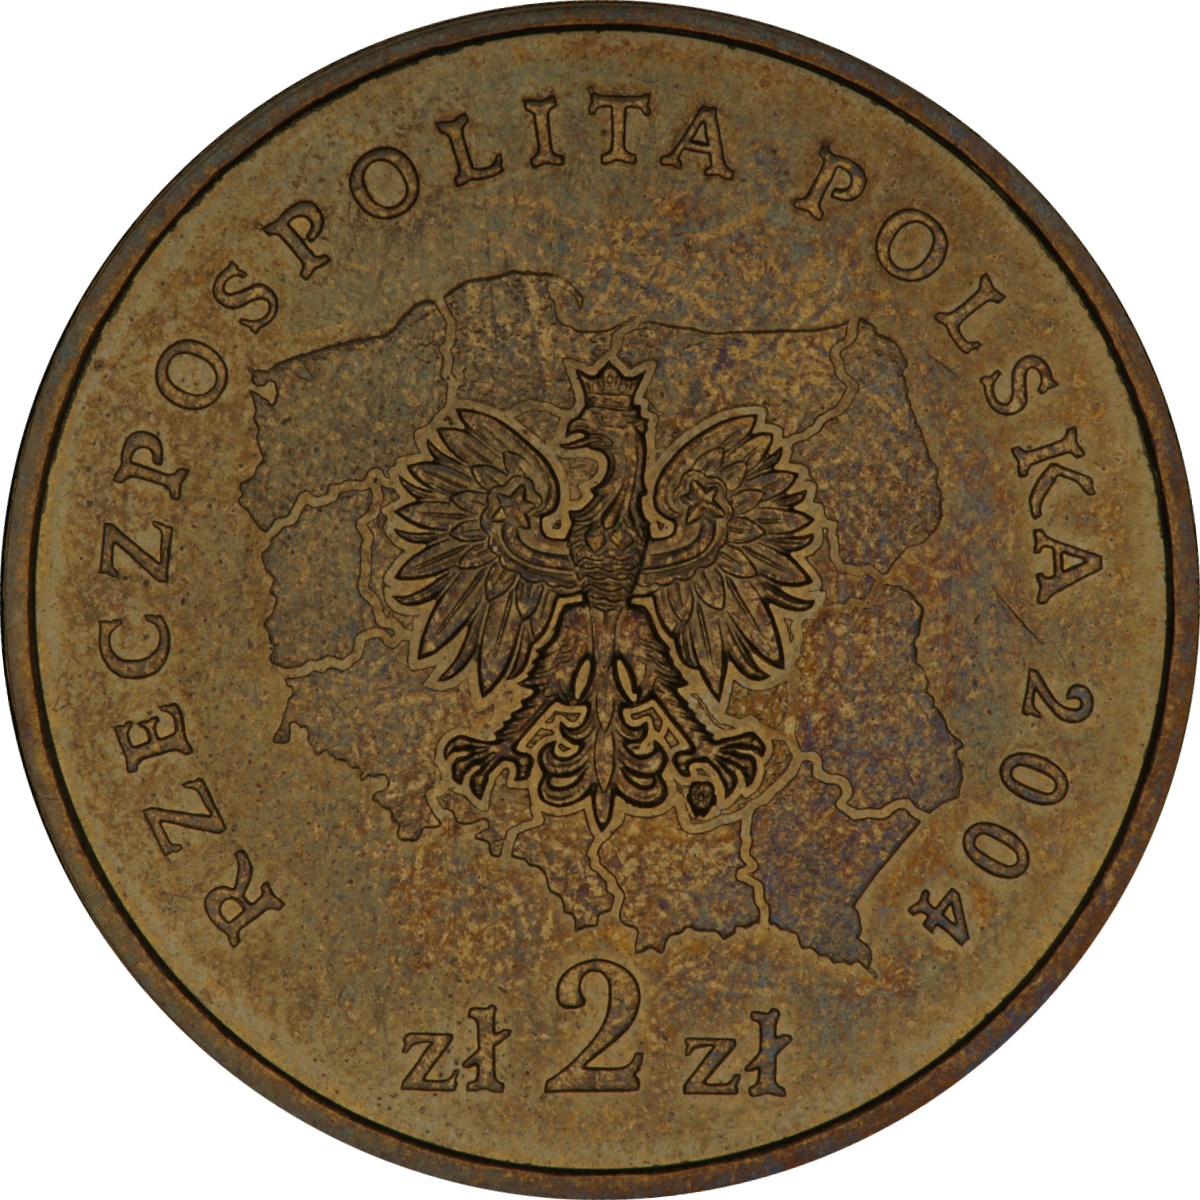 2zl-okolicznosciowe-wojewodztwo-lubelskie-awers-monety